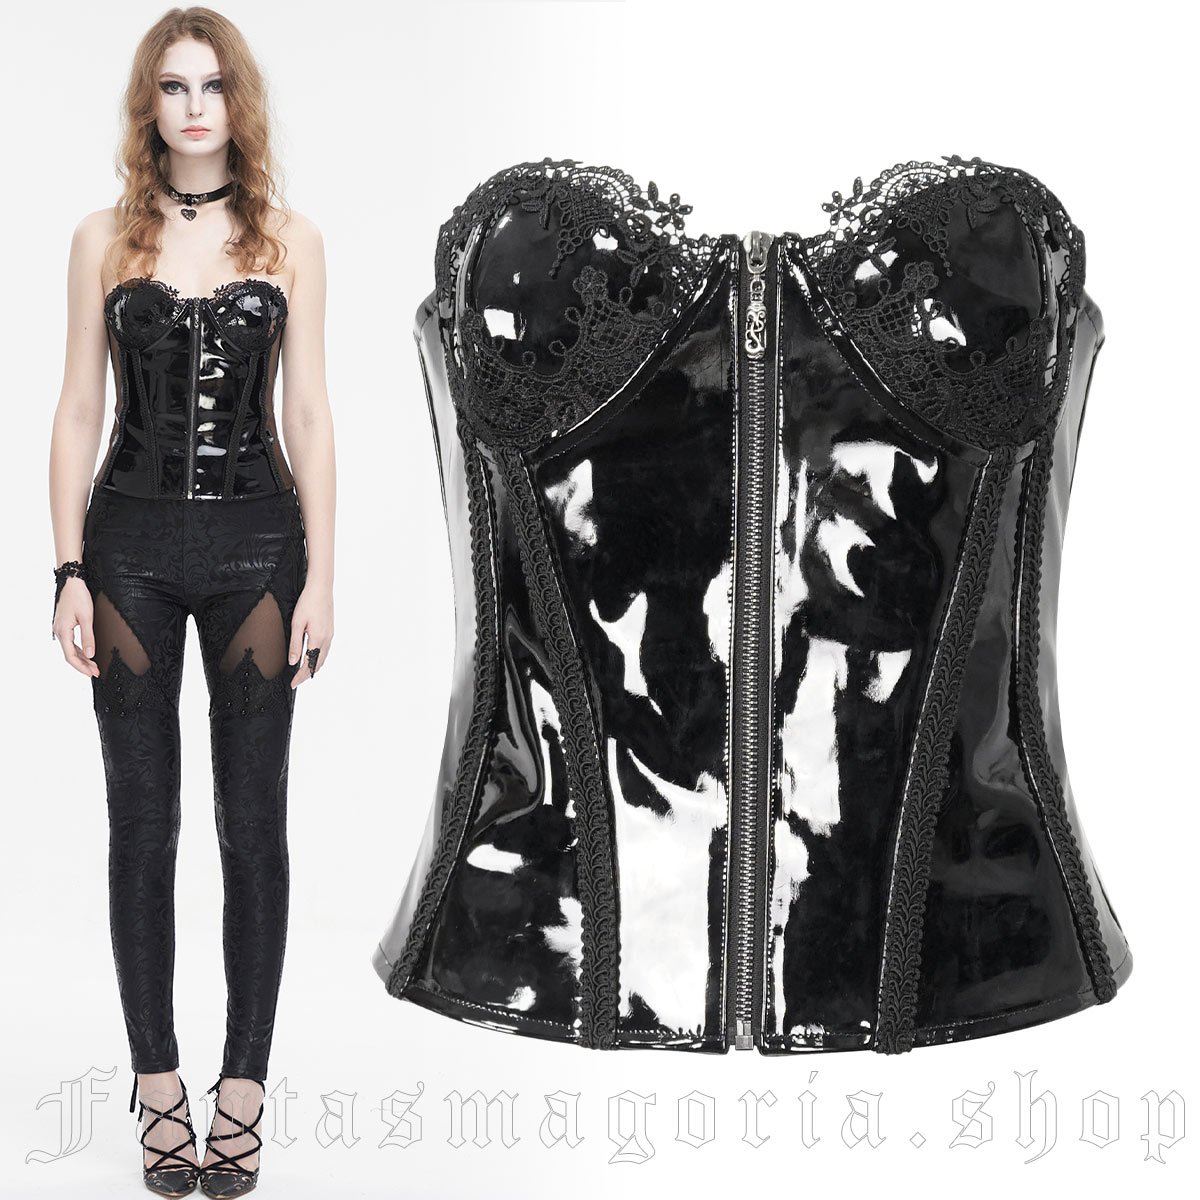 Angelique Black PVC Corset - Devil Fashion